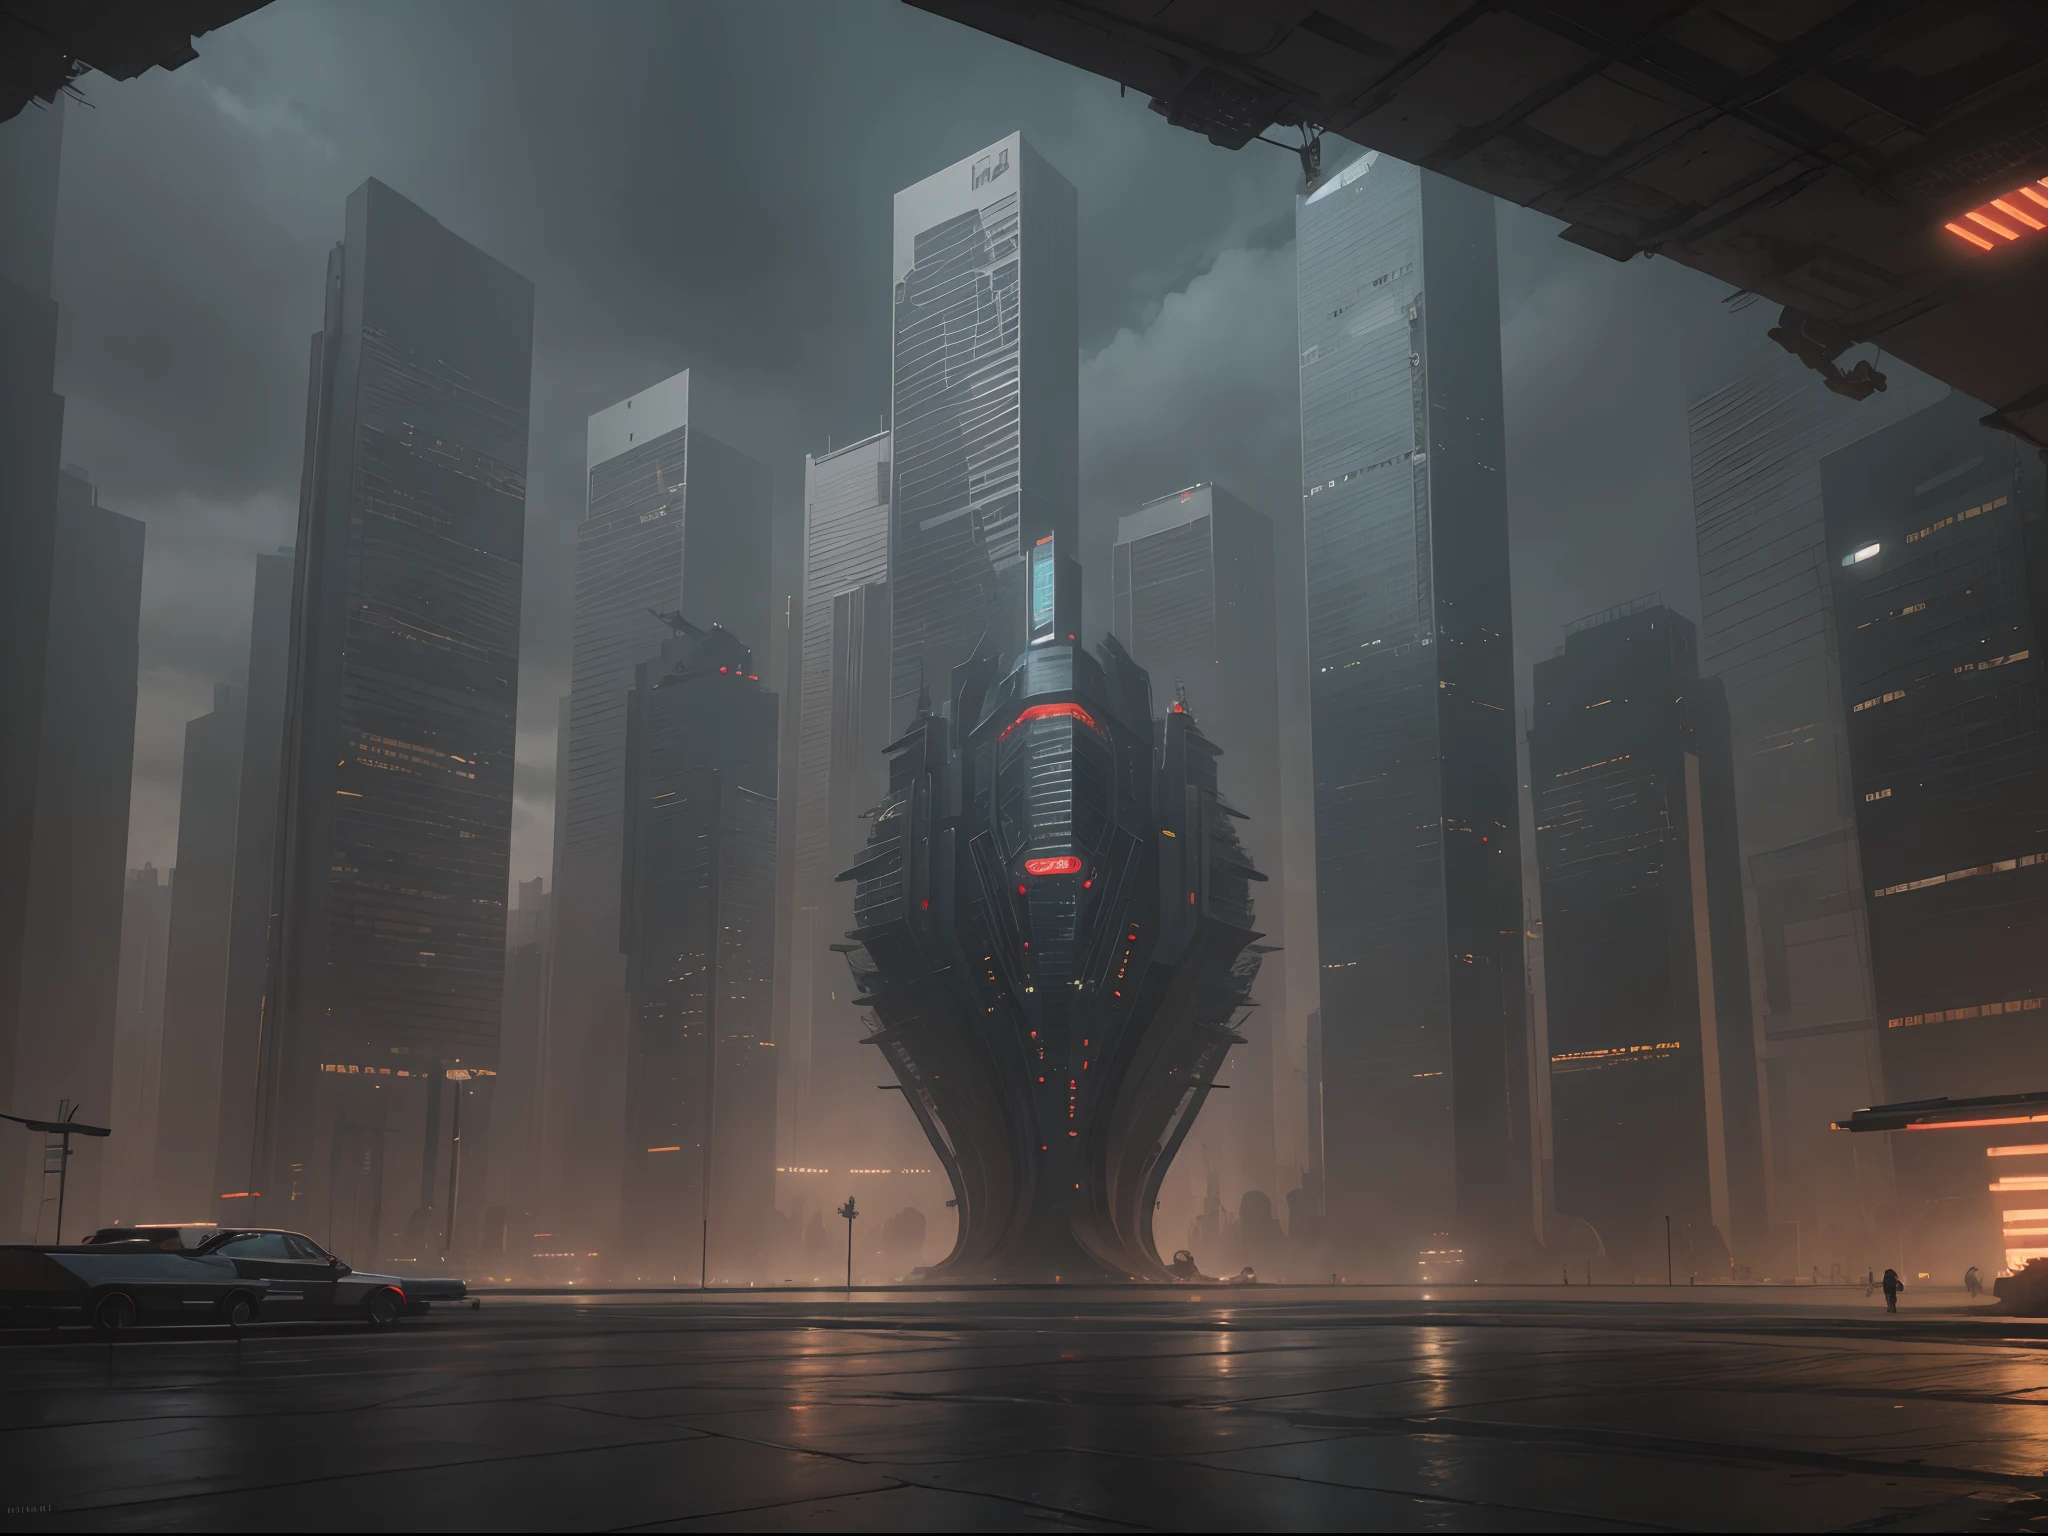 Paisagem urbana cyberpunk com arranha-céus imponentes, Placas de neon, e carros voadores.